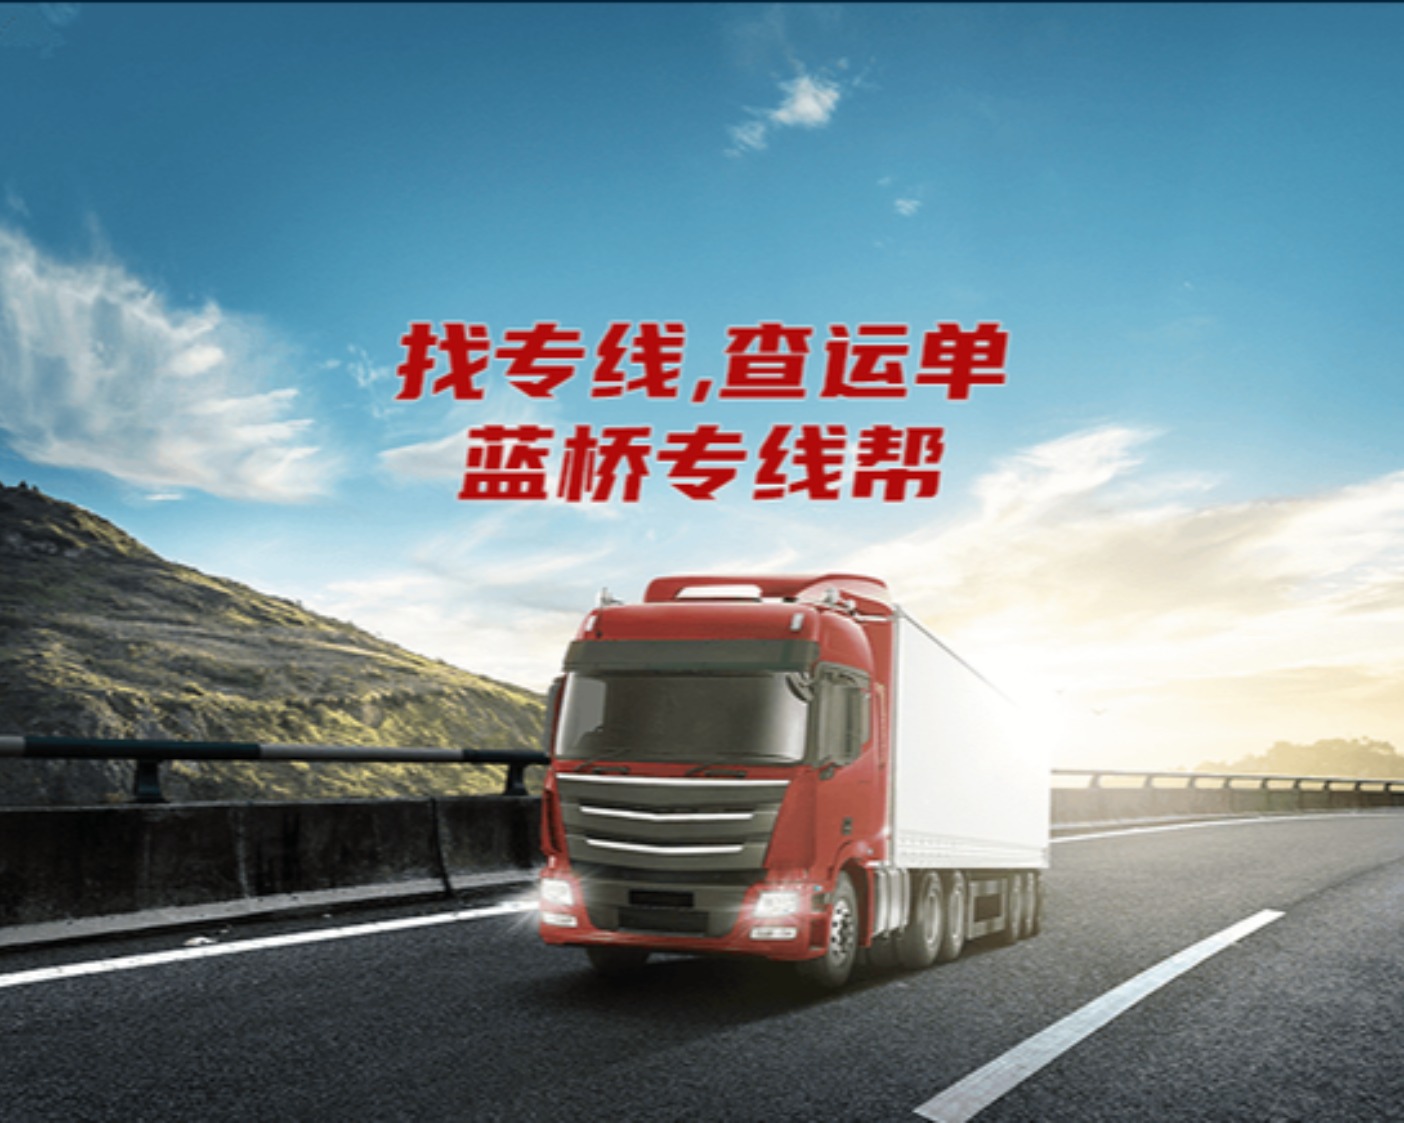 重庆路路通物流有限公司的专线公司的形象展示LOGO